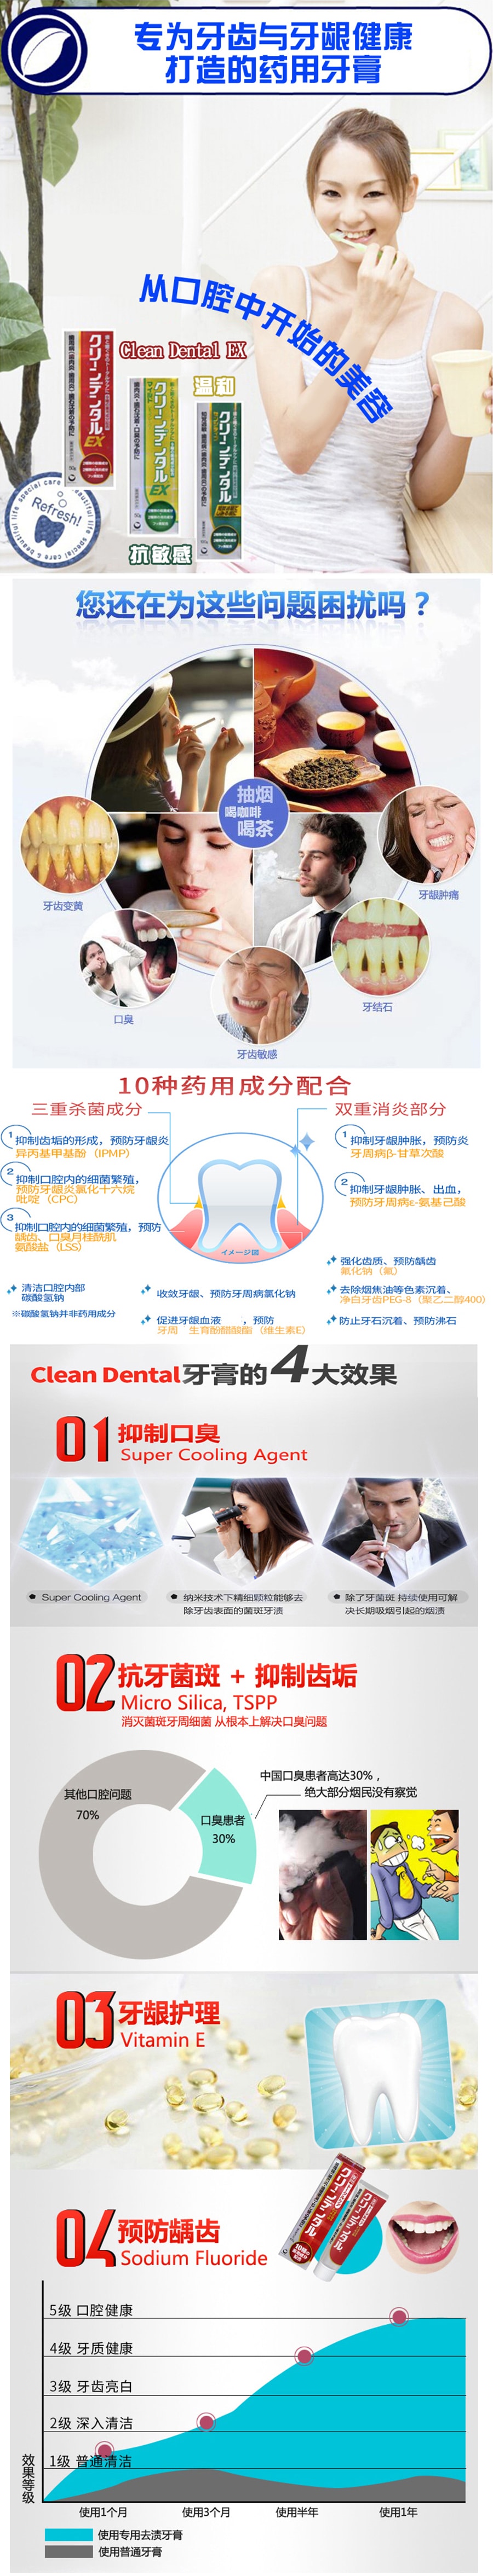 【日本直郵】 第一三共 牙膏 綠色預防牙周病 防過敏100g